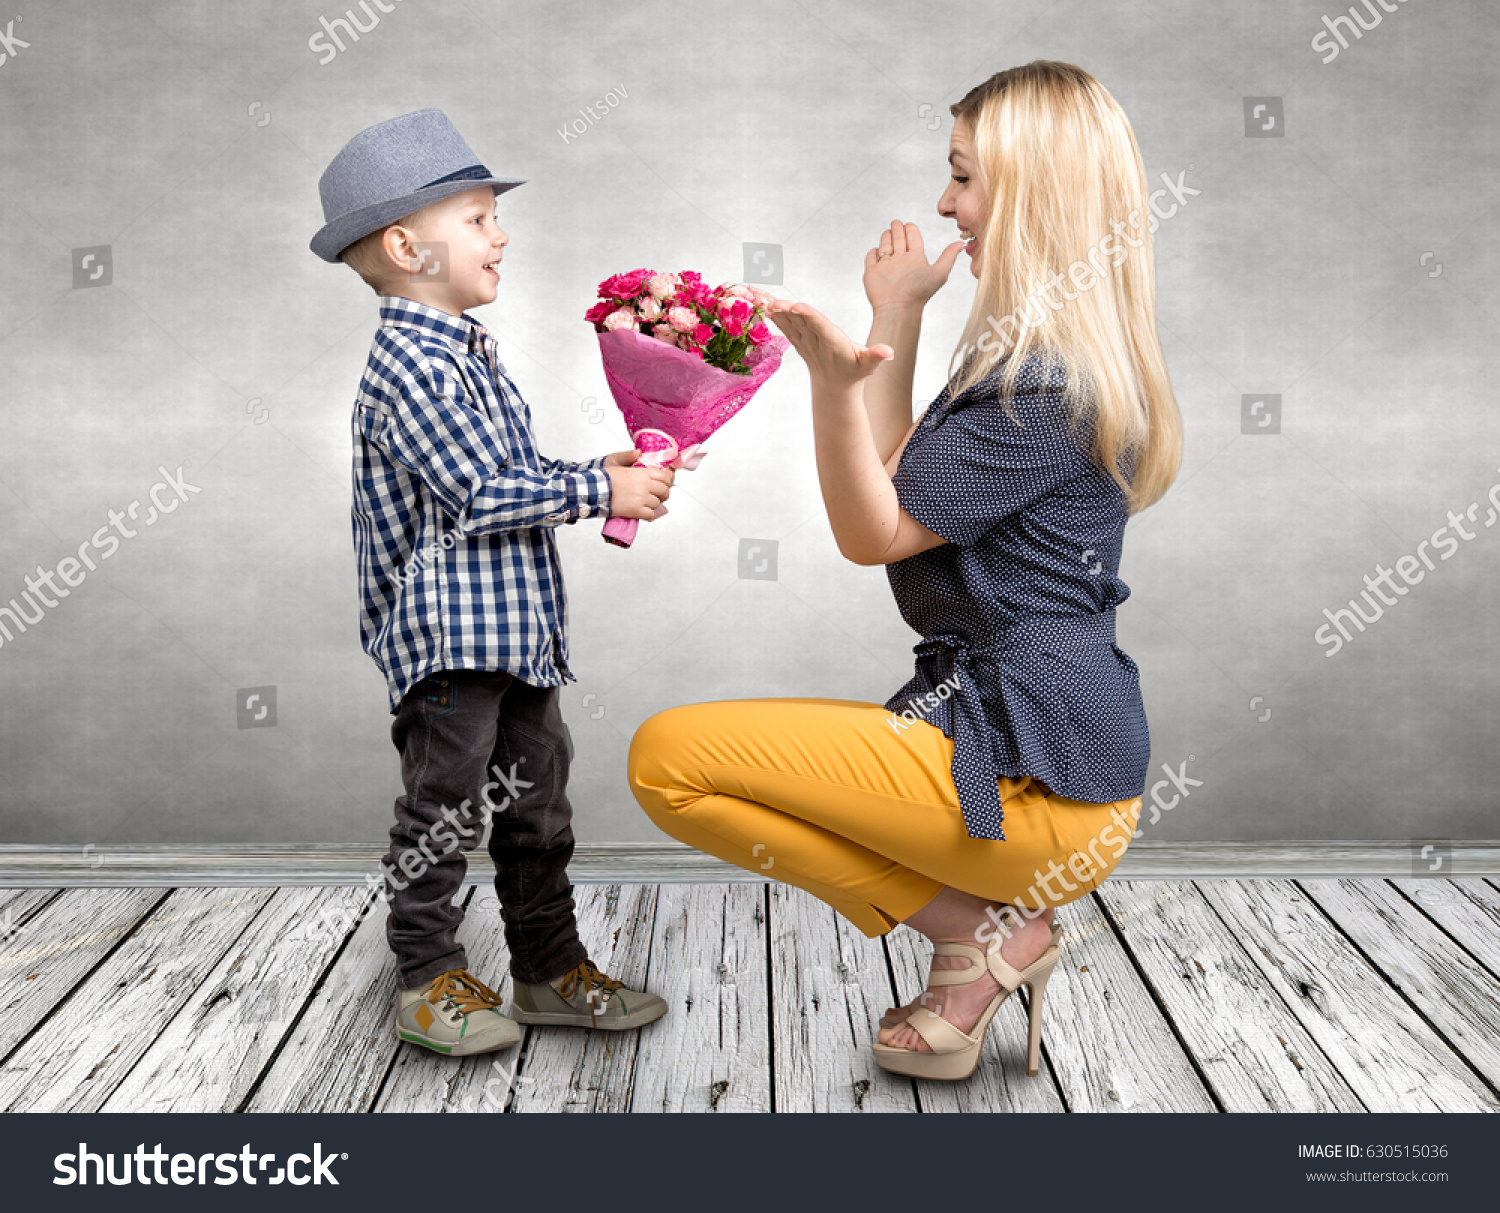 Мальчик дарит цветы маме